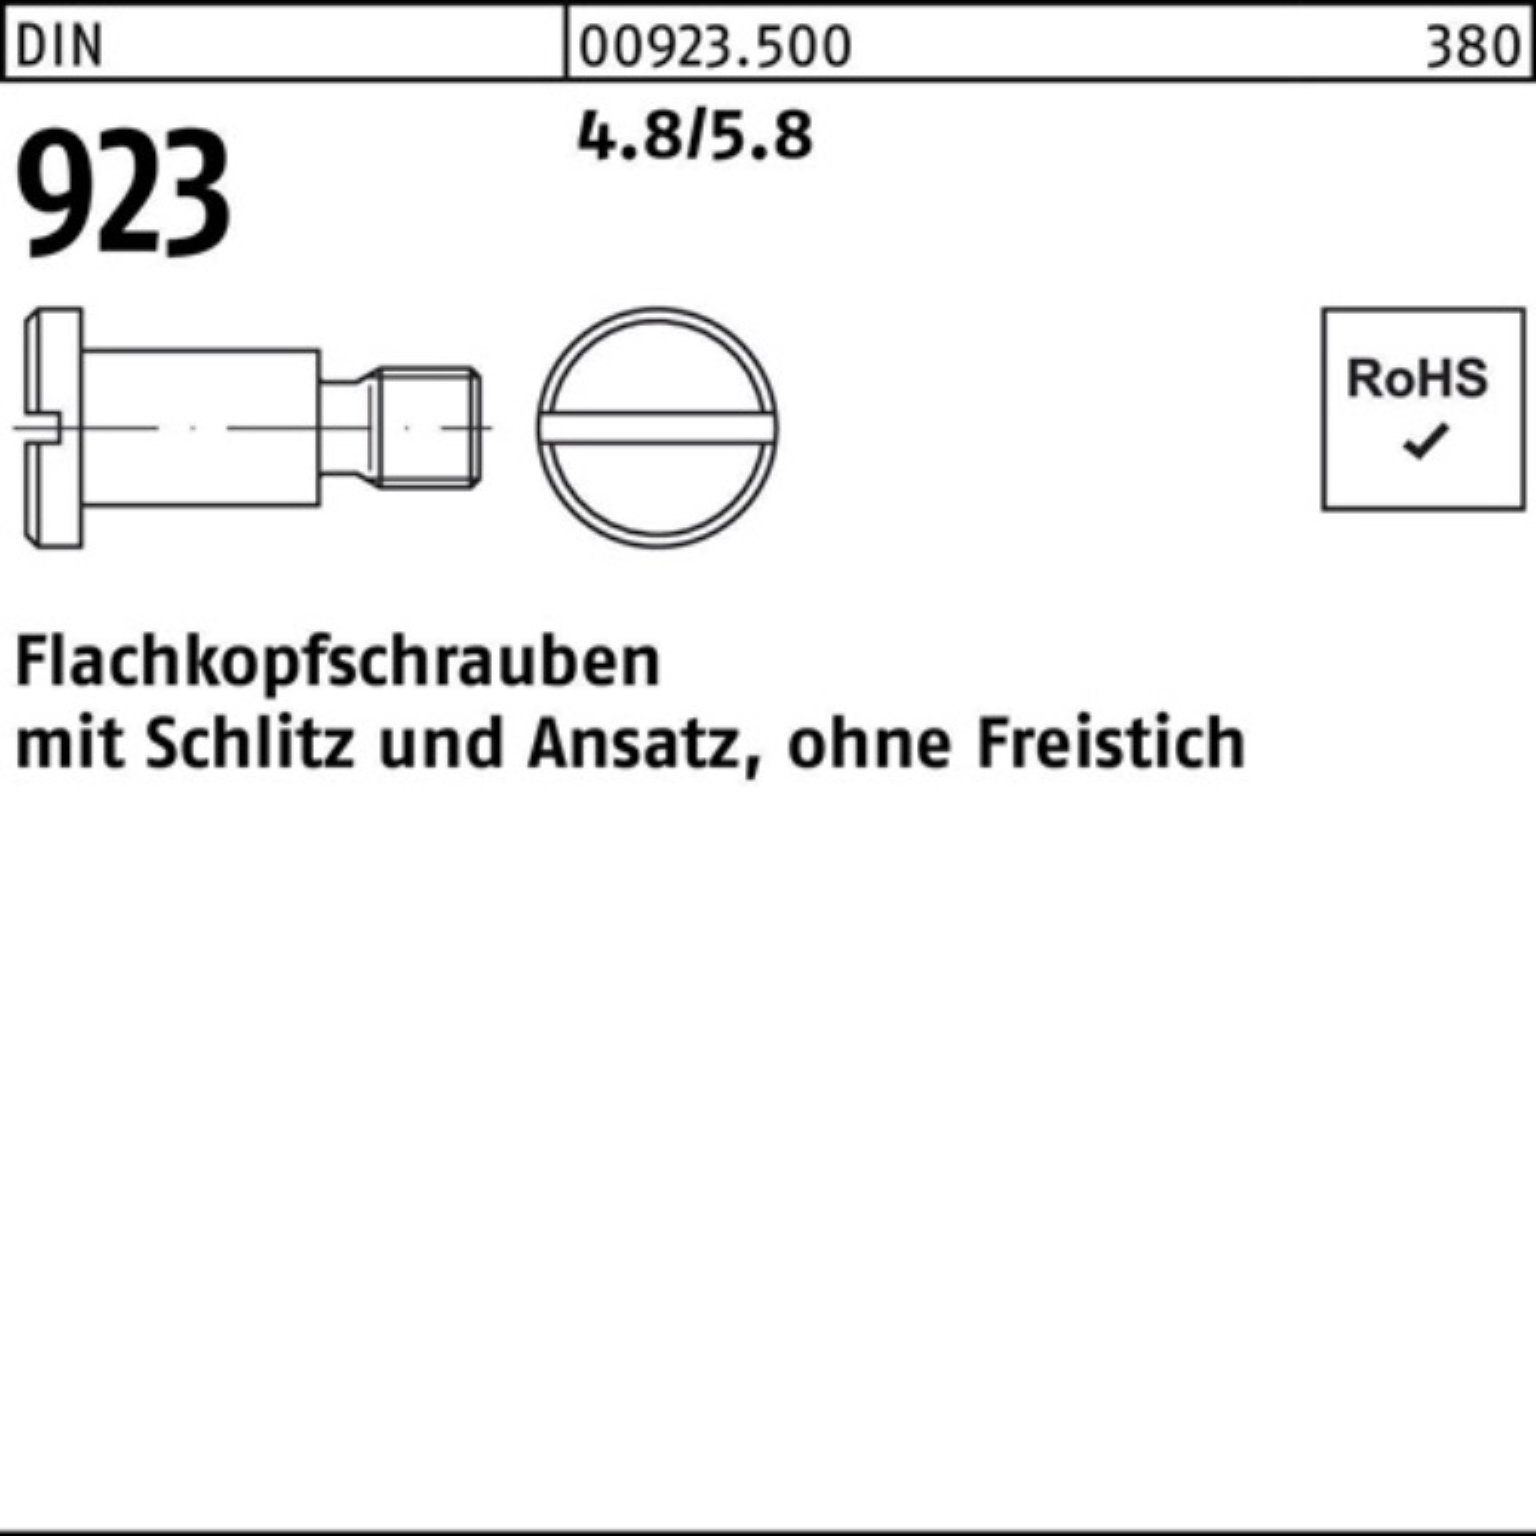 3x 9,0 Schlitz/Ansatz Flachkopfschraube M6x 100er Schraube Pack DIN 4.8/5.8 923 Reyher